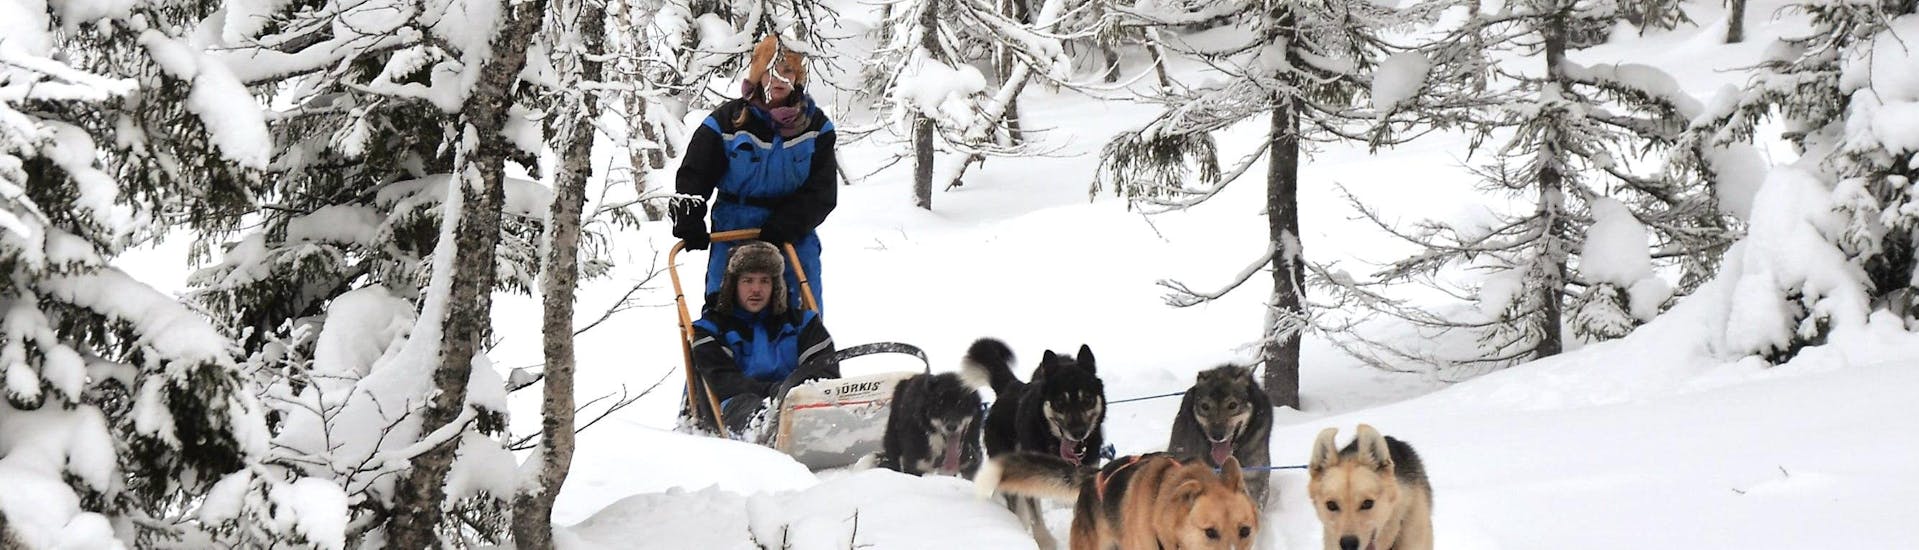 Een team van Alaska Huskies trekt opgewonden de slee door de sneeuw tijdens de Dog Sledding near Trondheim in Kopperå - Full Day Tour met Norway Husky Adventure.